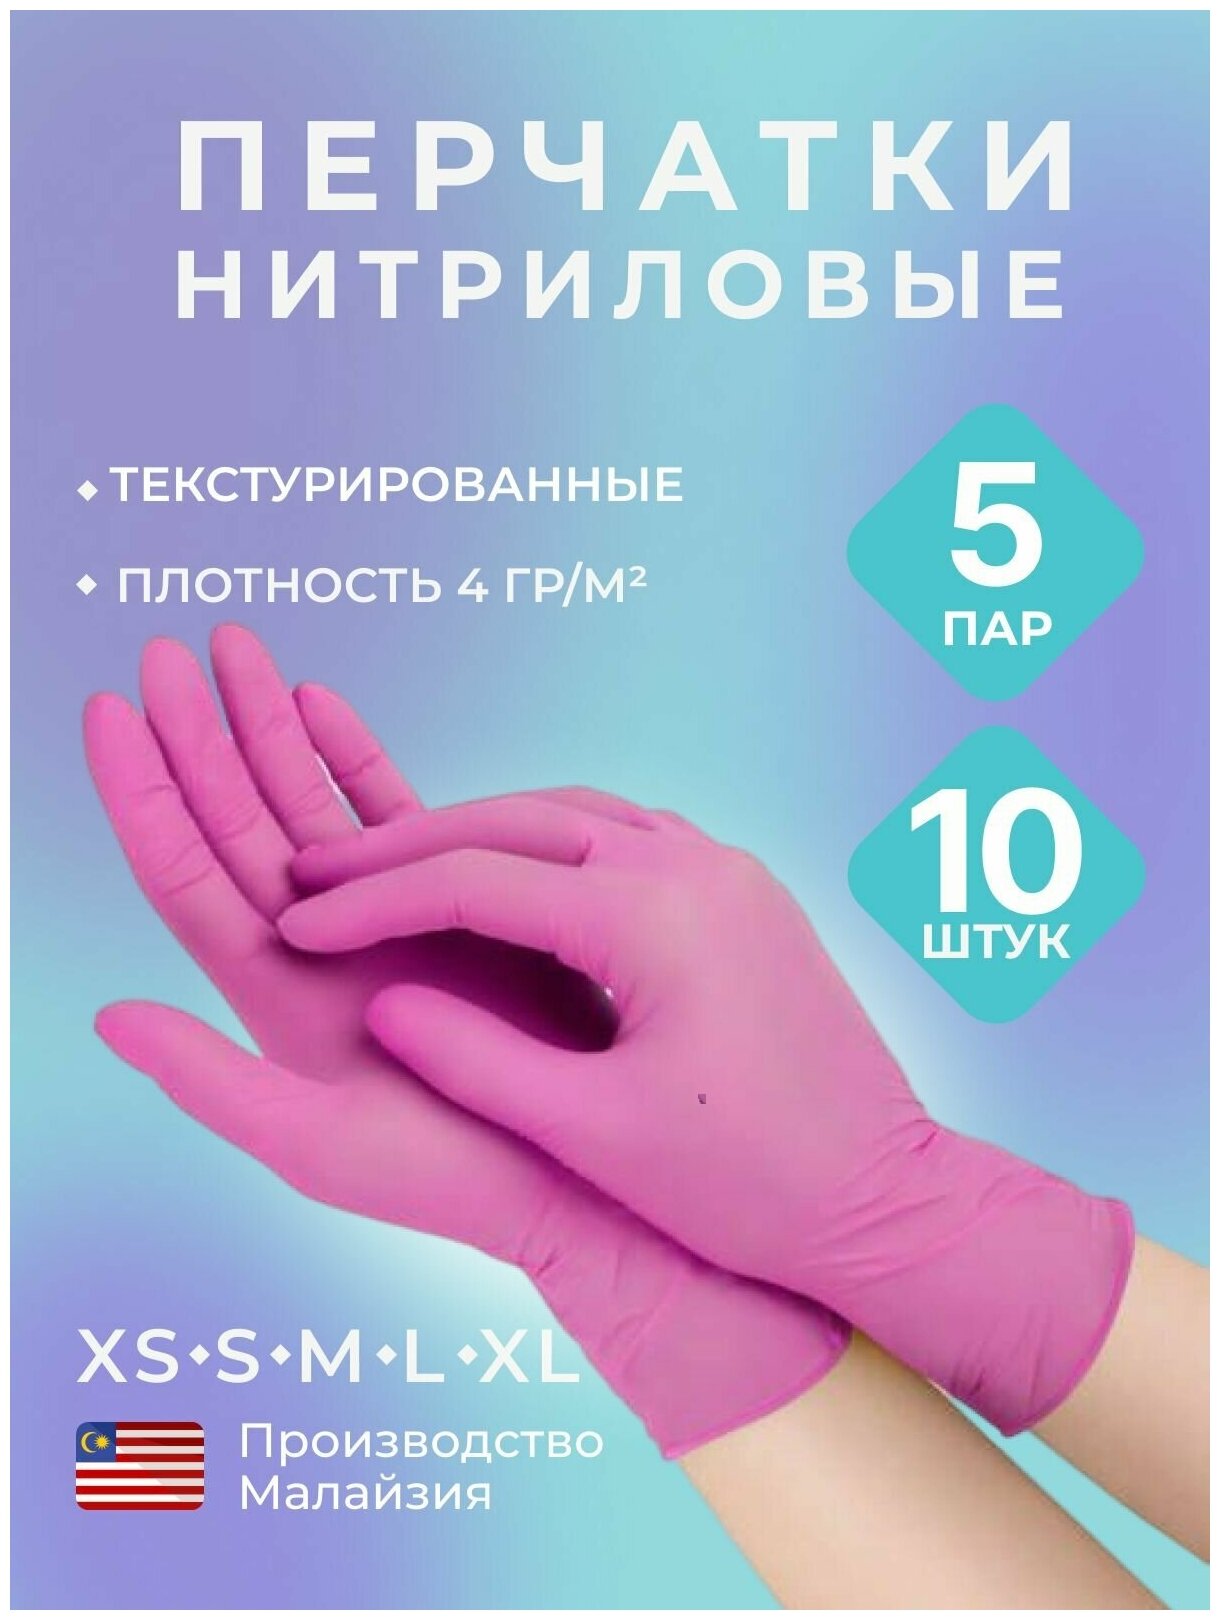 Перчатки нитриловые, одноразовые, текстурированные на пальцах, розовый, 10 шт, 5 пар, р-р M